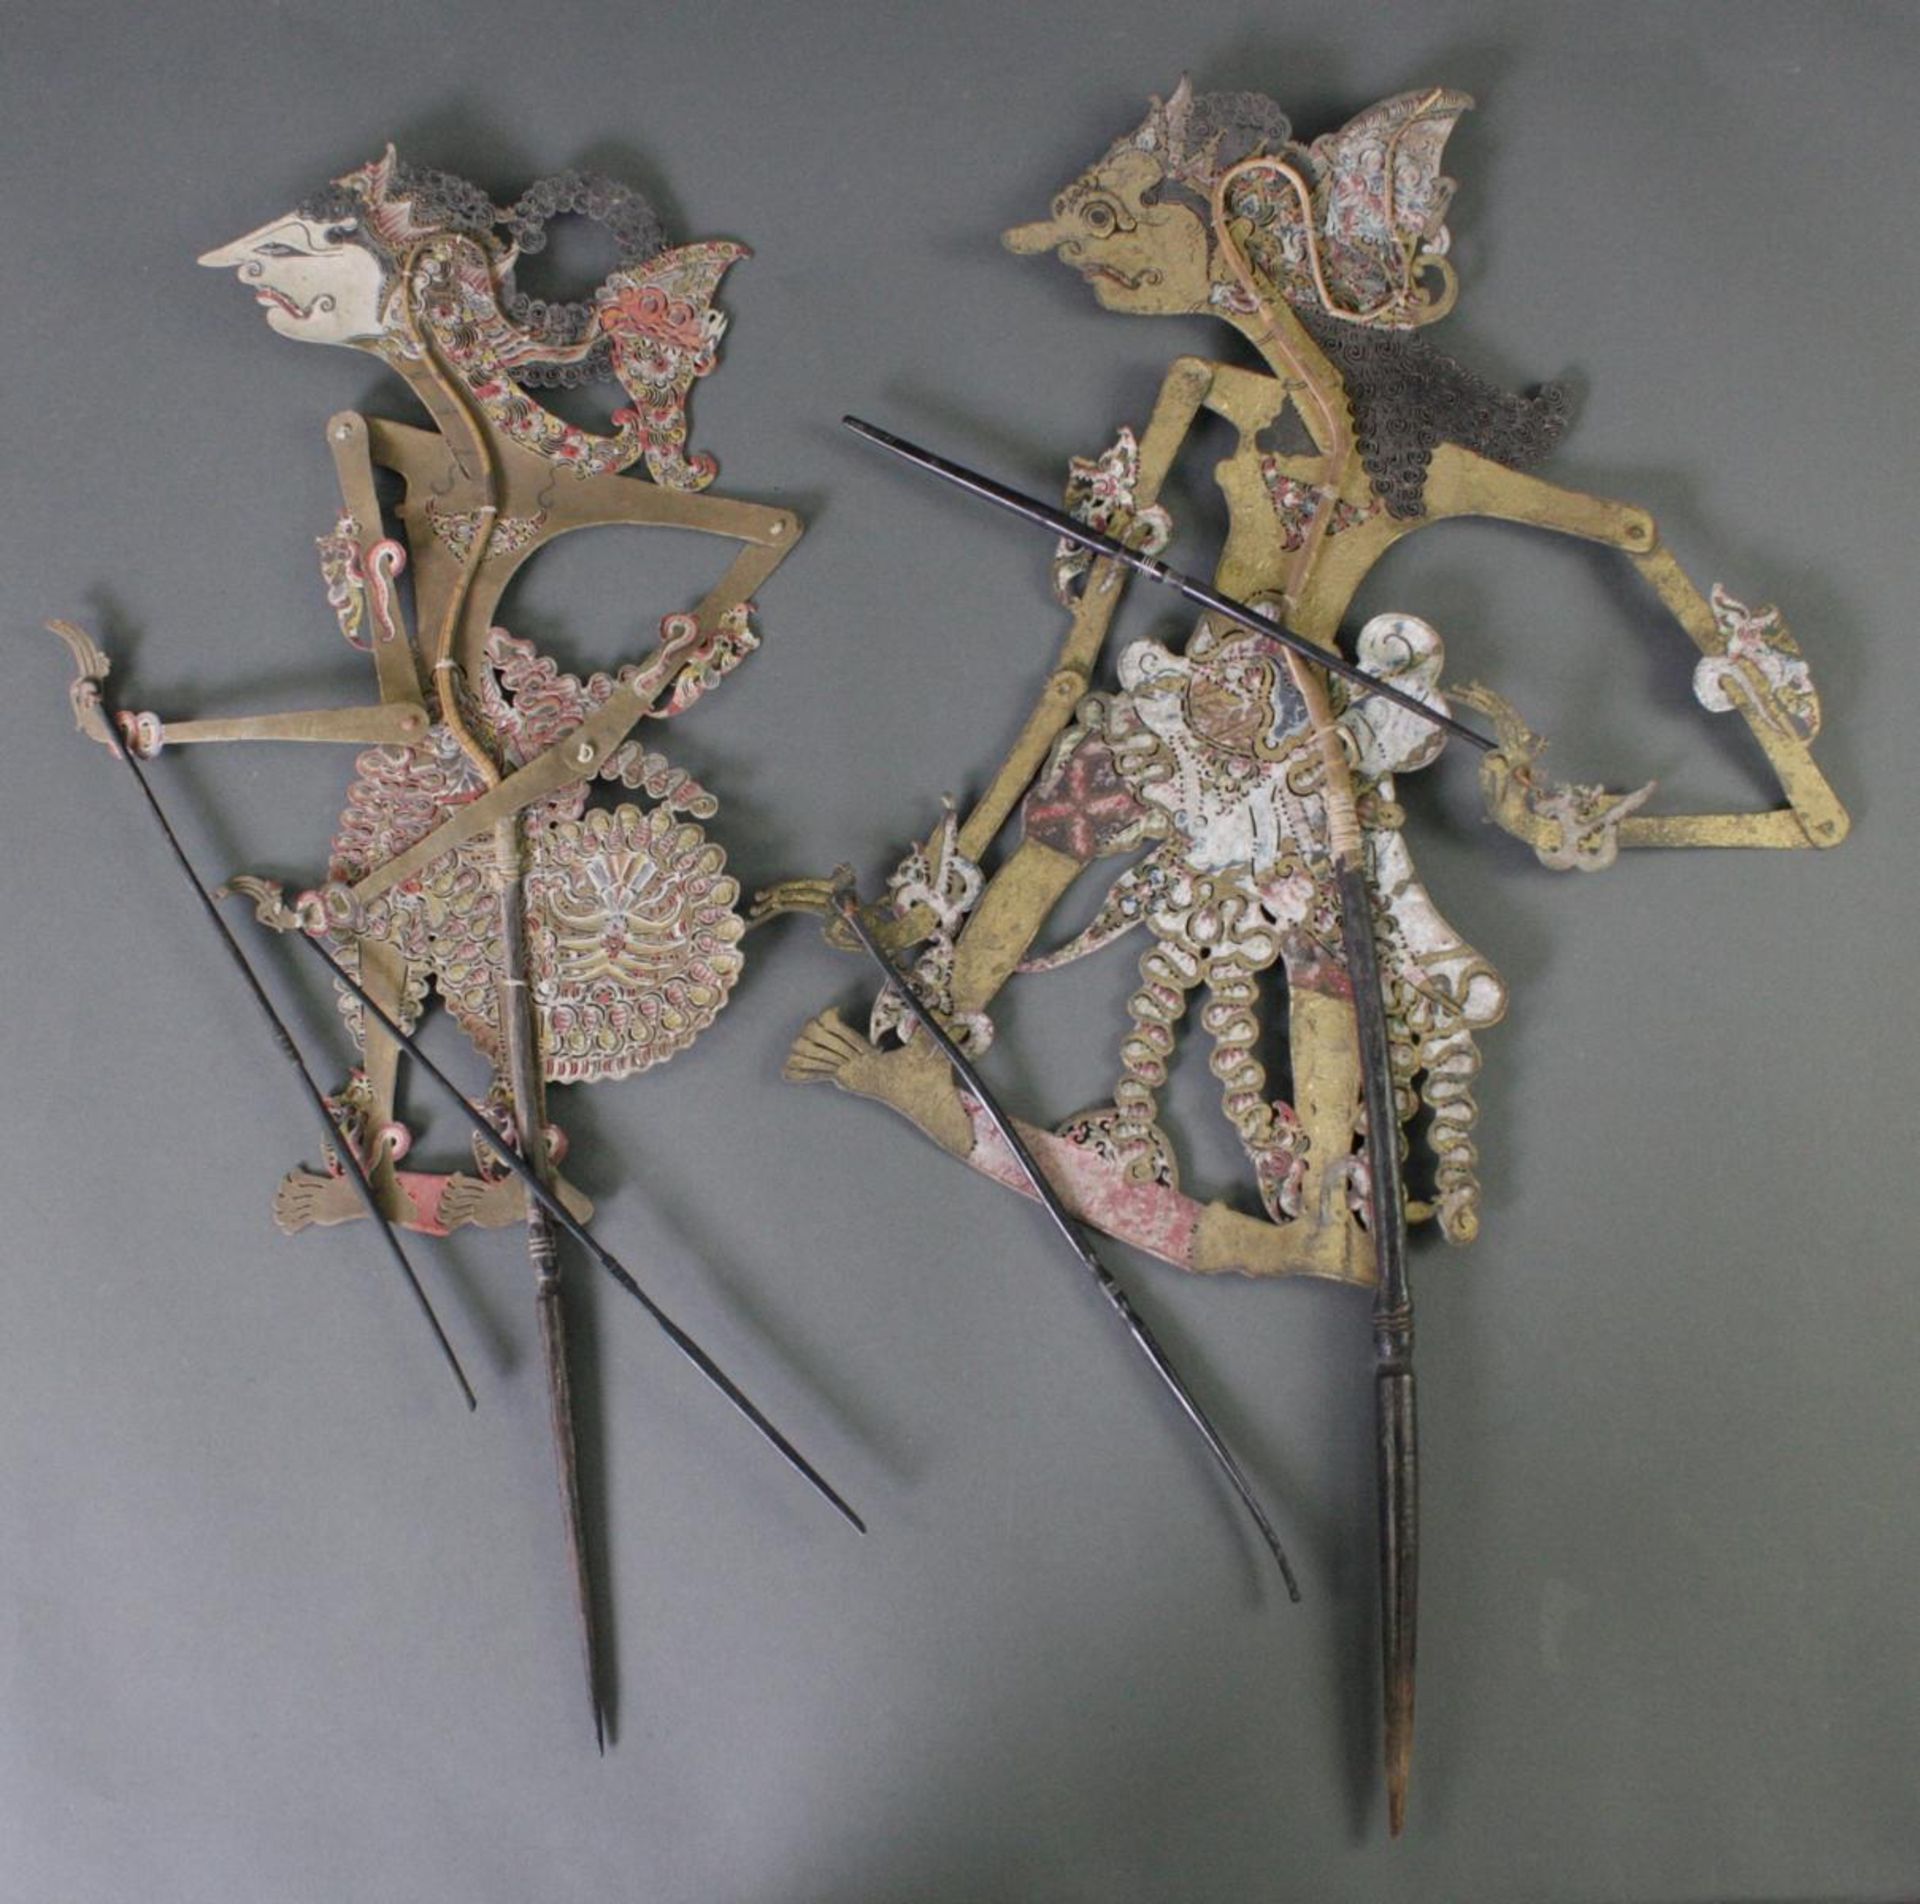 2 indonesische Schattenspiel-Puppen, Wayang-Kulit - Image 2 of 2